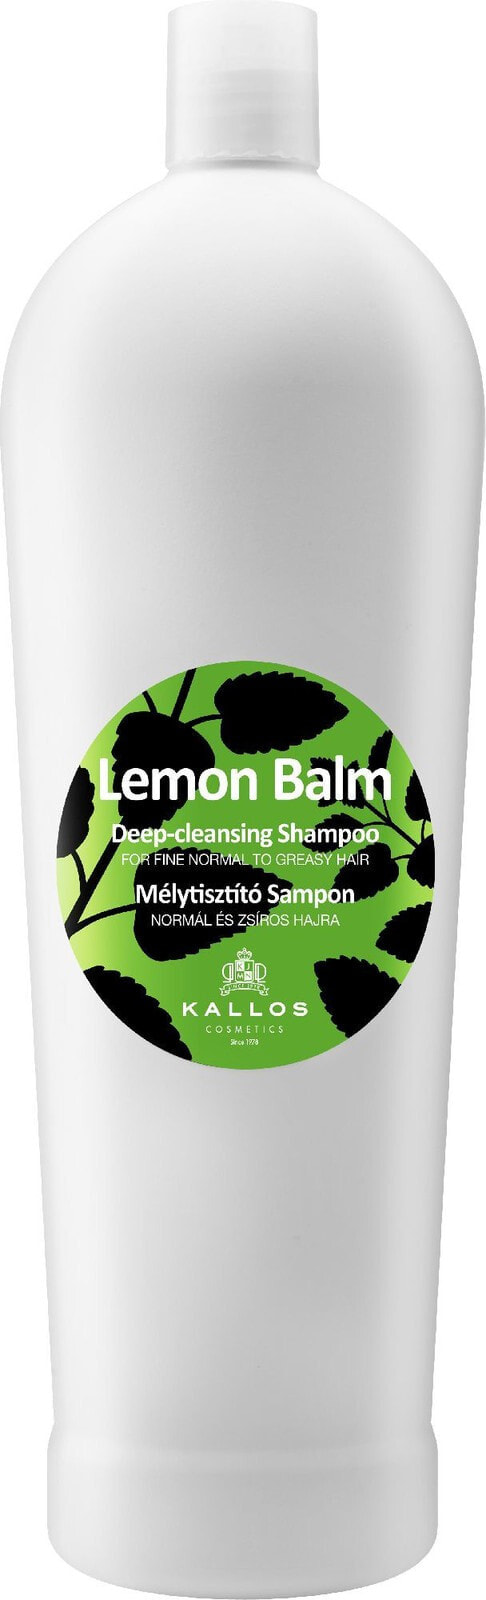 Kallos Cosmetics Lemon Balm Shampoo Глубоко очищающий лимонный шампунь 1000 мл